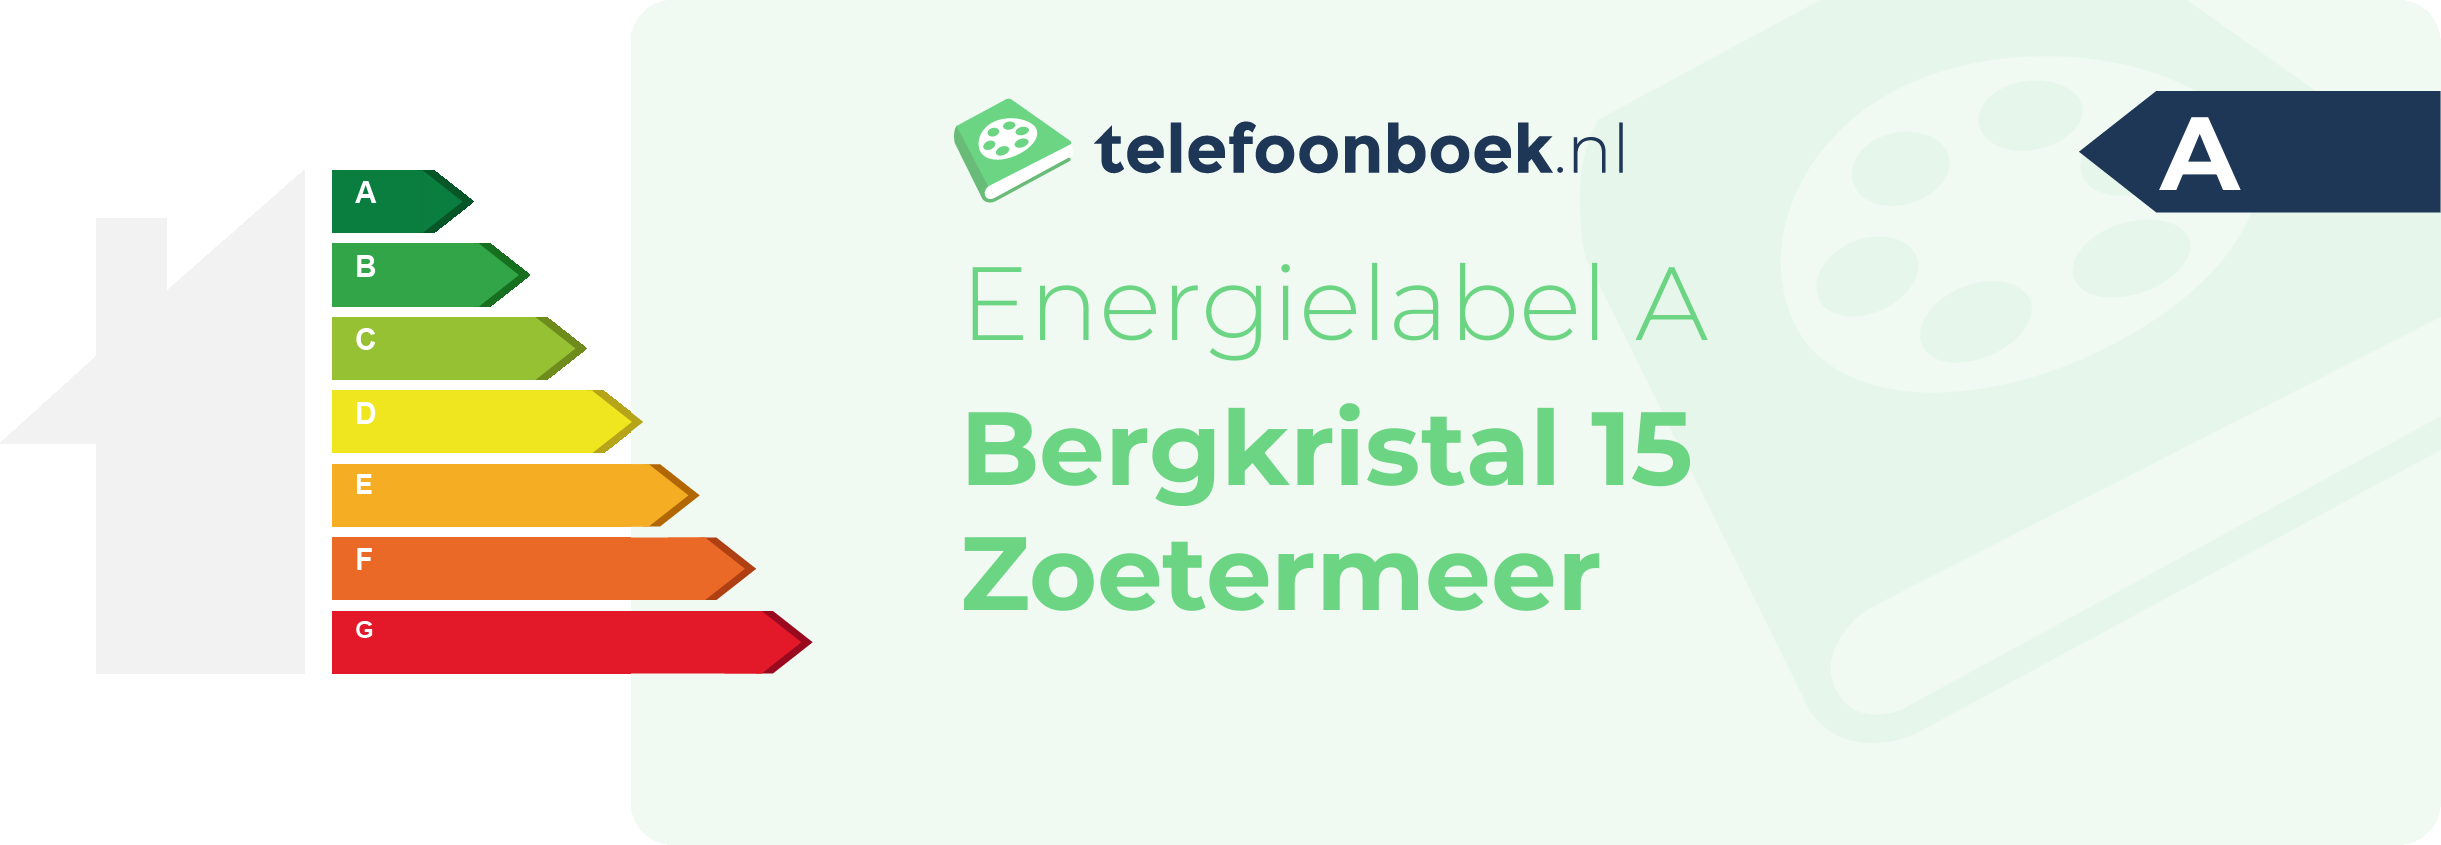 Energielabel Bergkristal 15 Zoetermeer